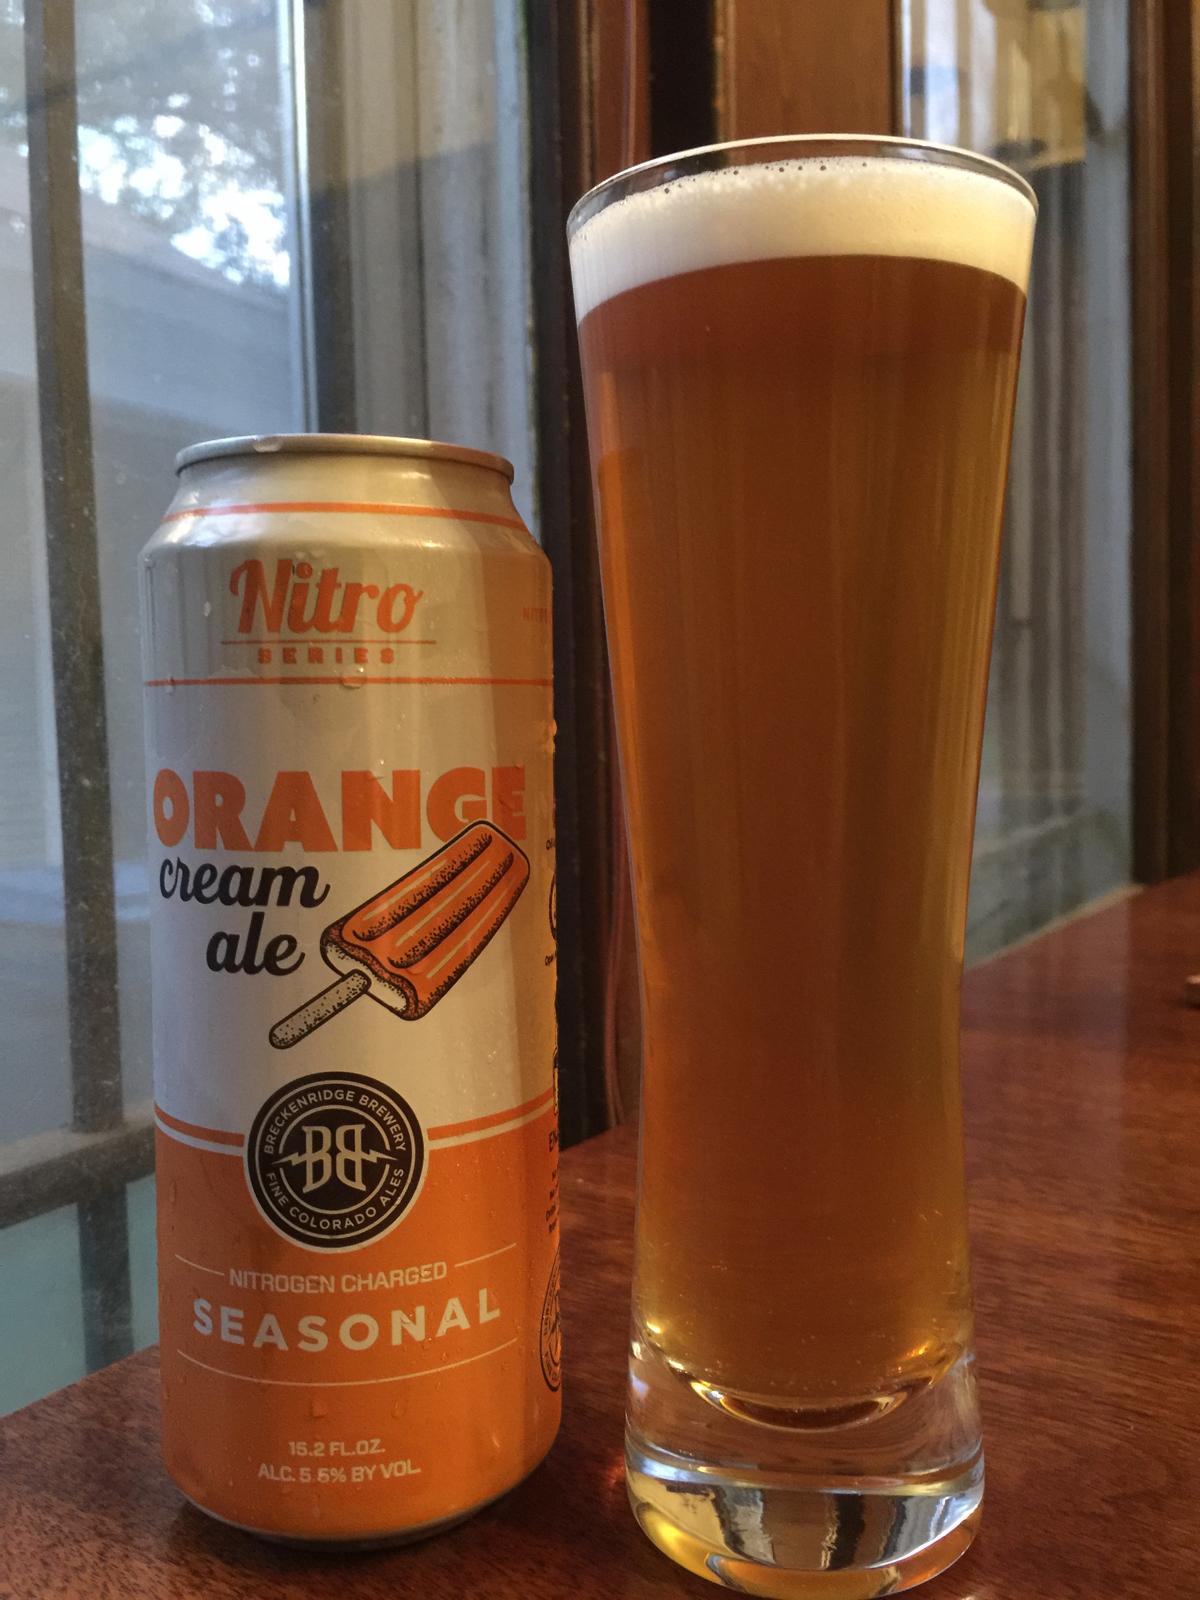 Orange Cream Ale (Nitro Series)